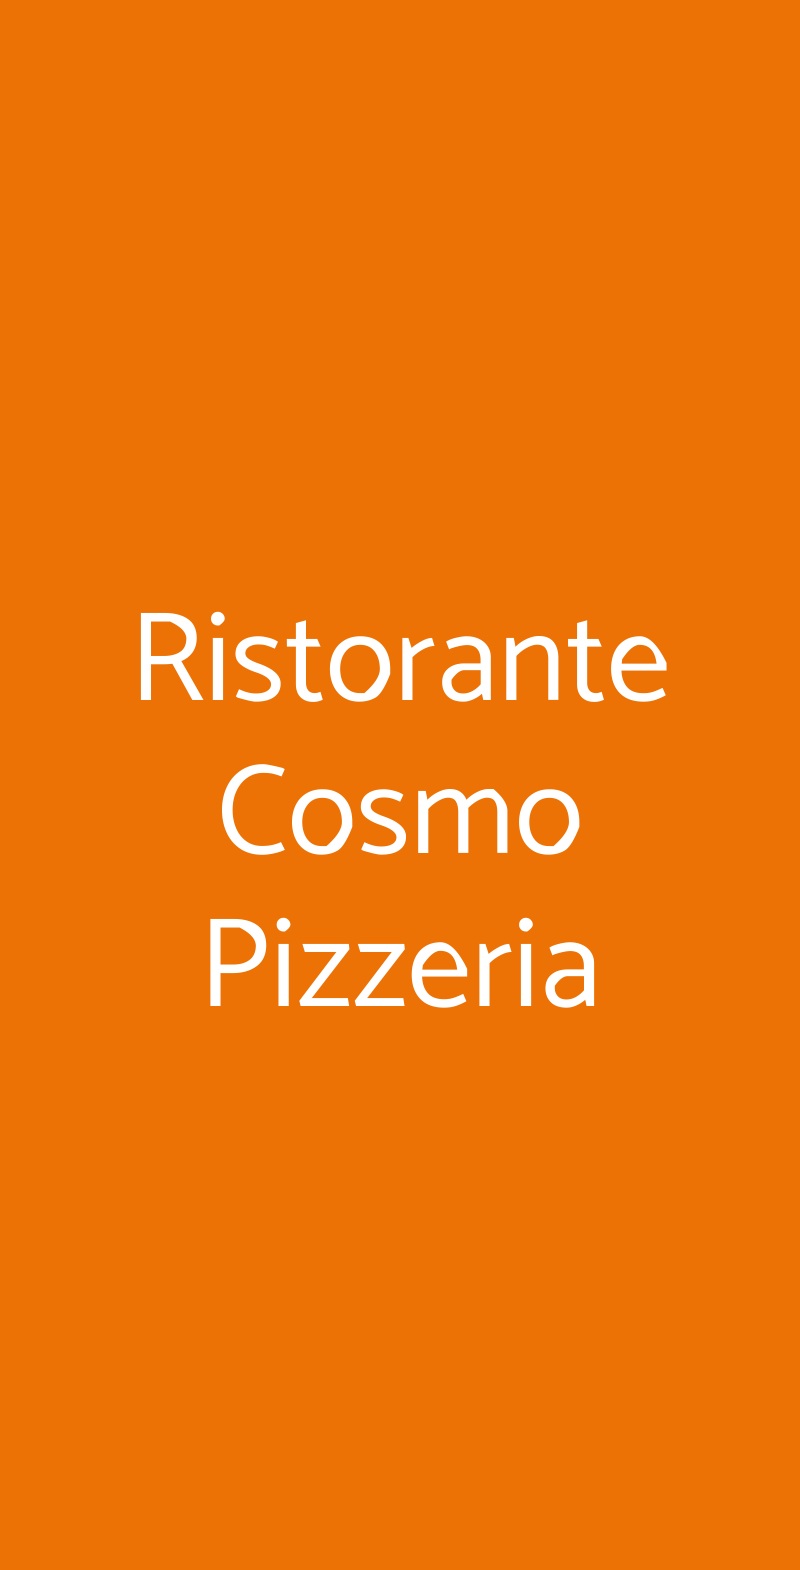 Ristorante Cosmo Pizzeria Roma menù 1 pagina